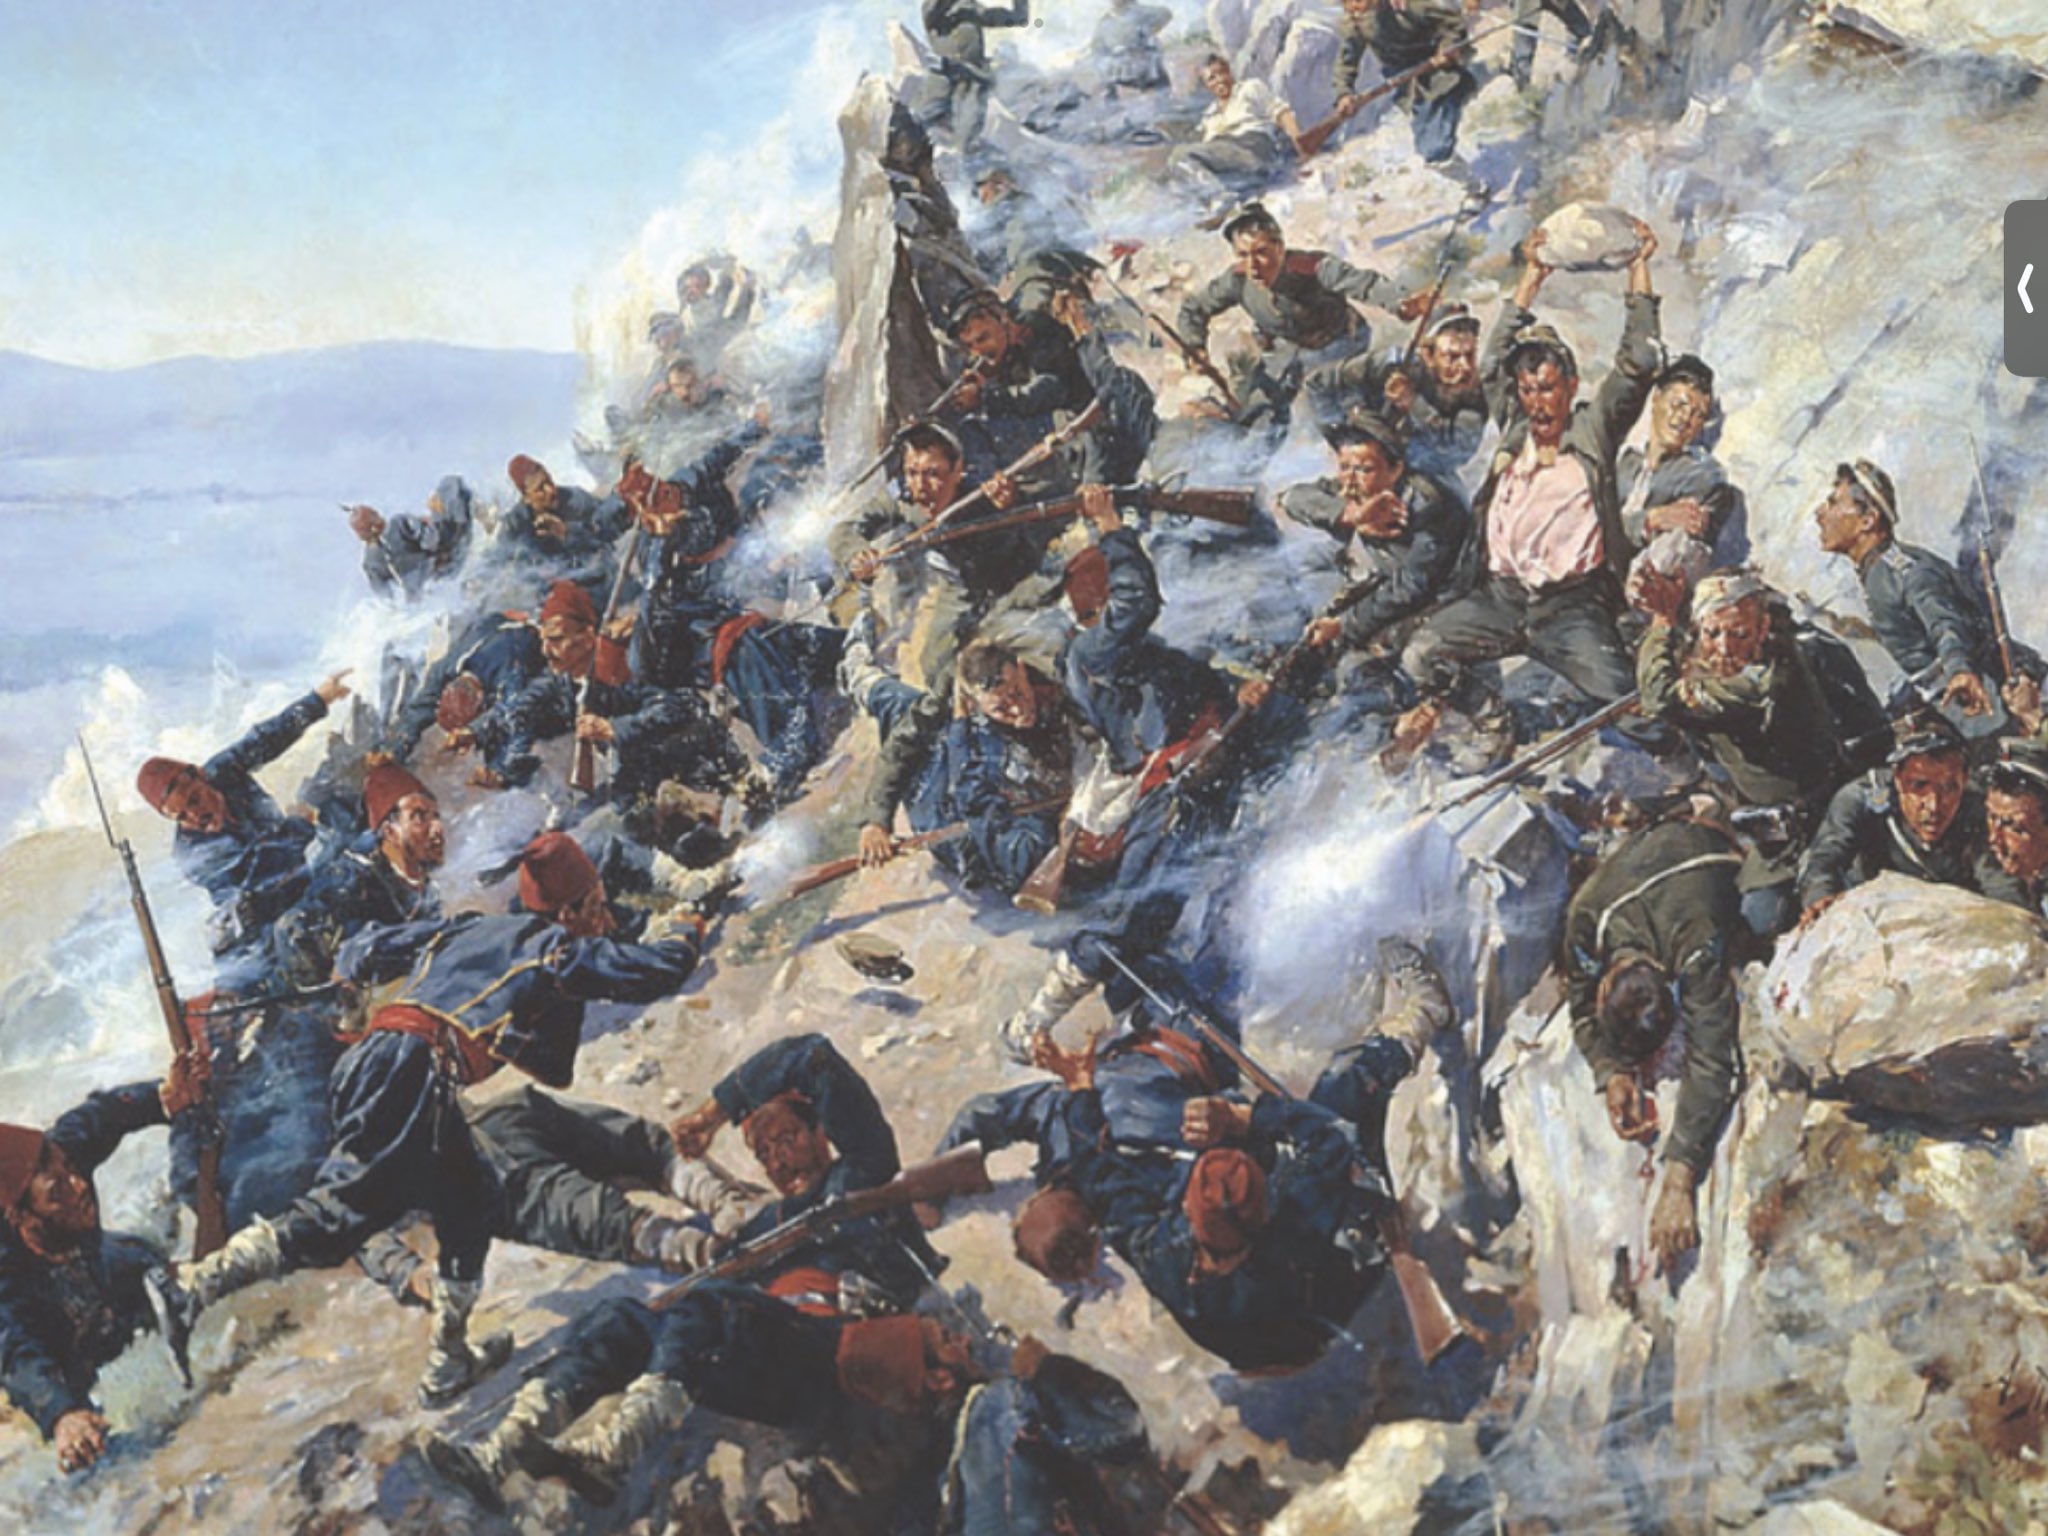 Защита “Орлиного гнезда” орловцами и брянцами 12 августа 1877 года